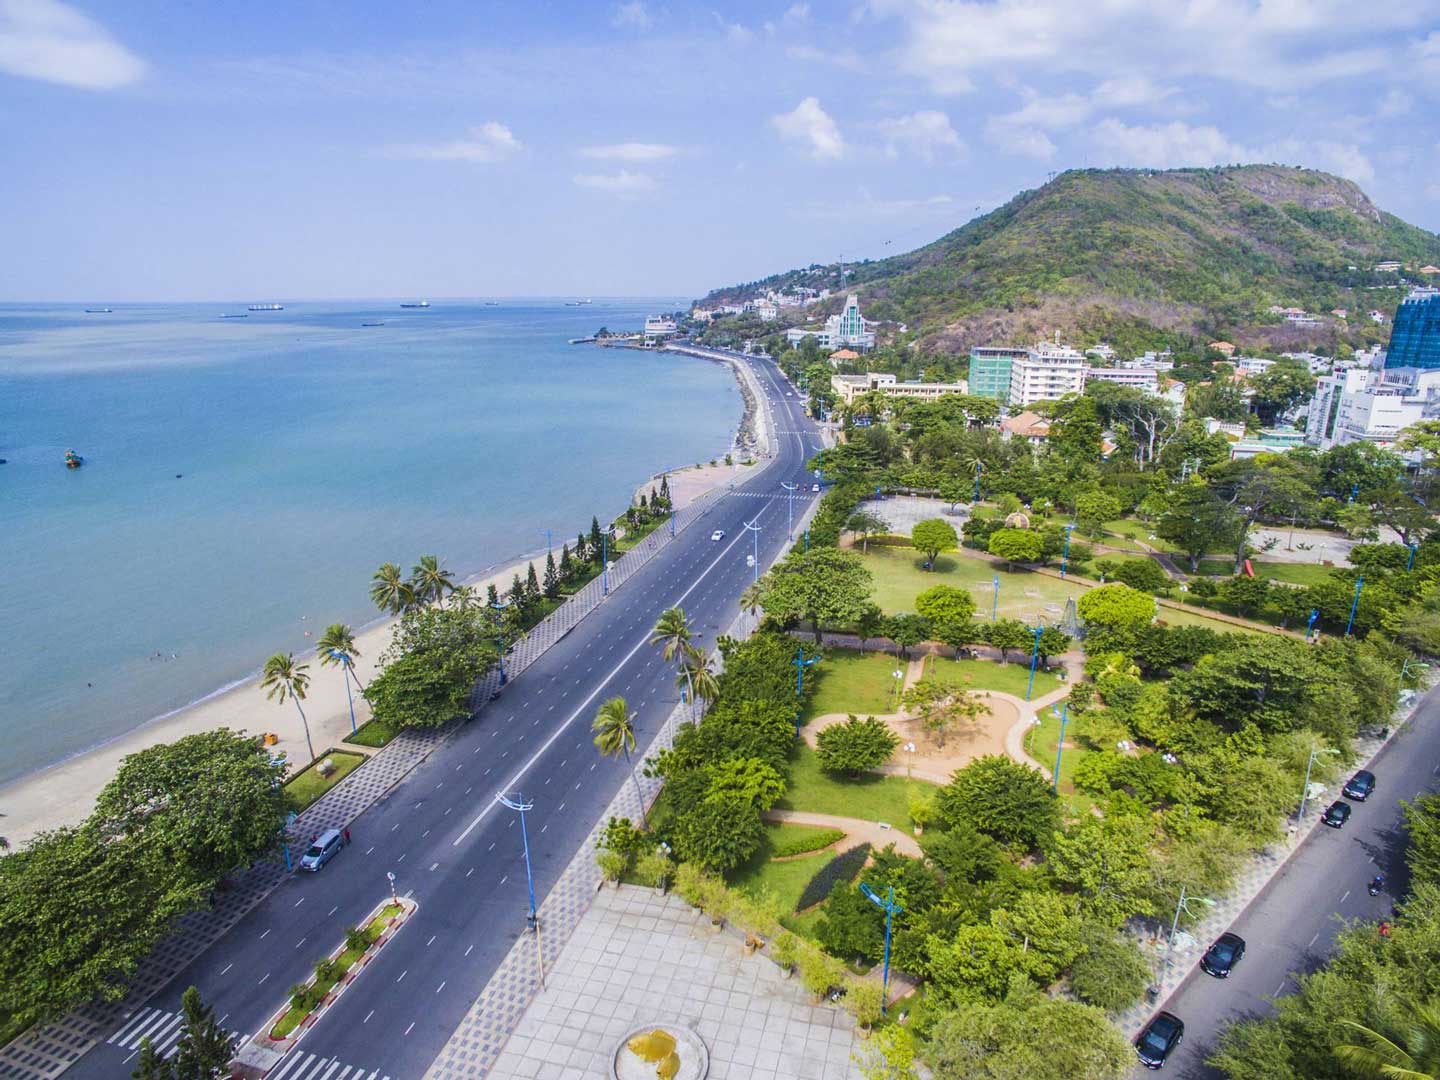 Quy hoạch tỉnh Bà Rịa - Vũng Tàu vừa được Chính phủ phê duyệt là cơ sở quan trọng để địa phương có những bước đi đột phá trong tương lai.